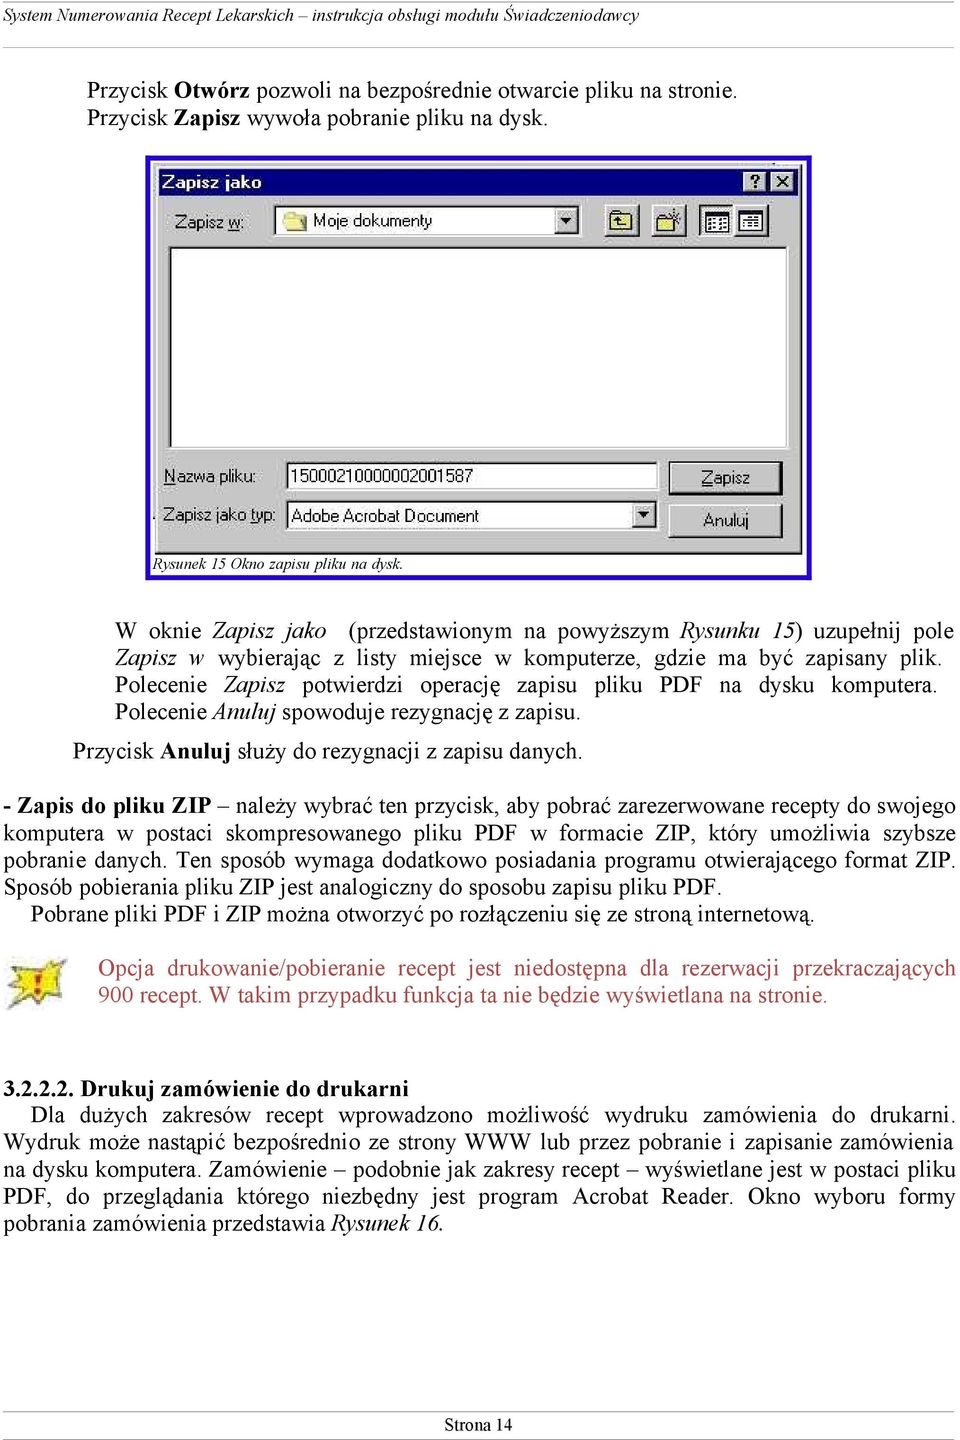 Polecenie Zapisz potwierdzi operację zapisu pliku PDF na dysku komputera. Polecenie Anuluj spowoduje rezygnację z zapisu. Przycisk Anuluj służy do rezygnacji z zapisu danych.